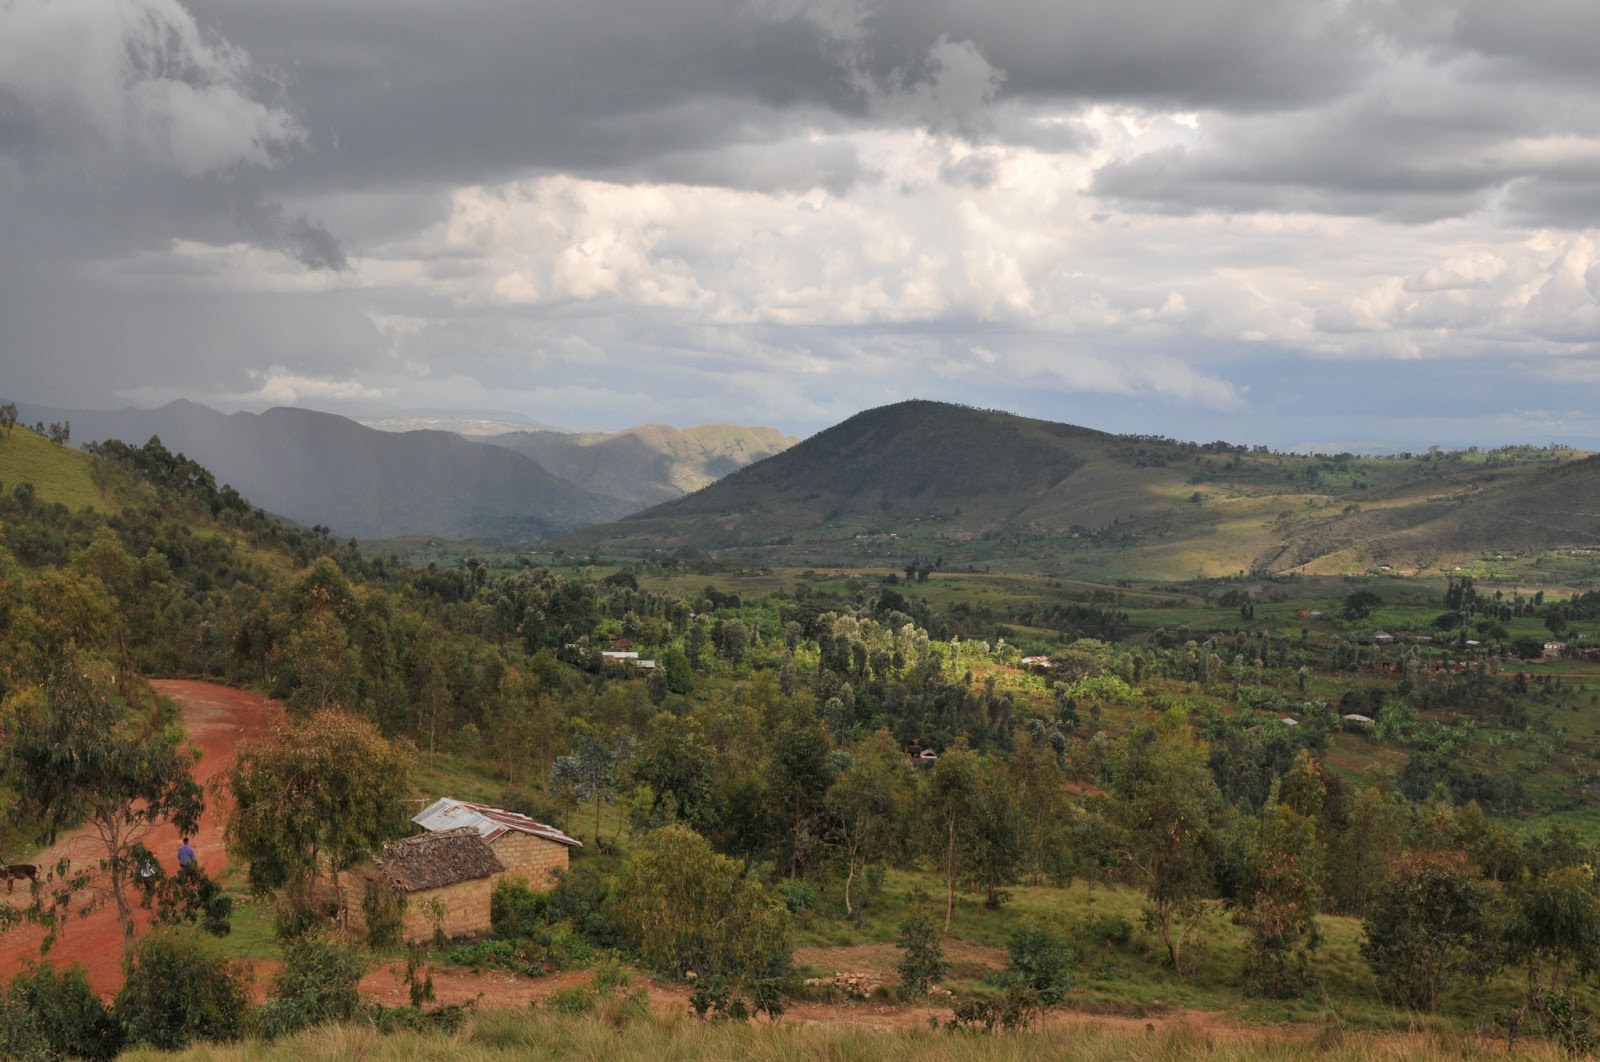 Travel & Adventures: Burundi. A voyage to Burundi, Africa - Bujumbura